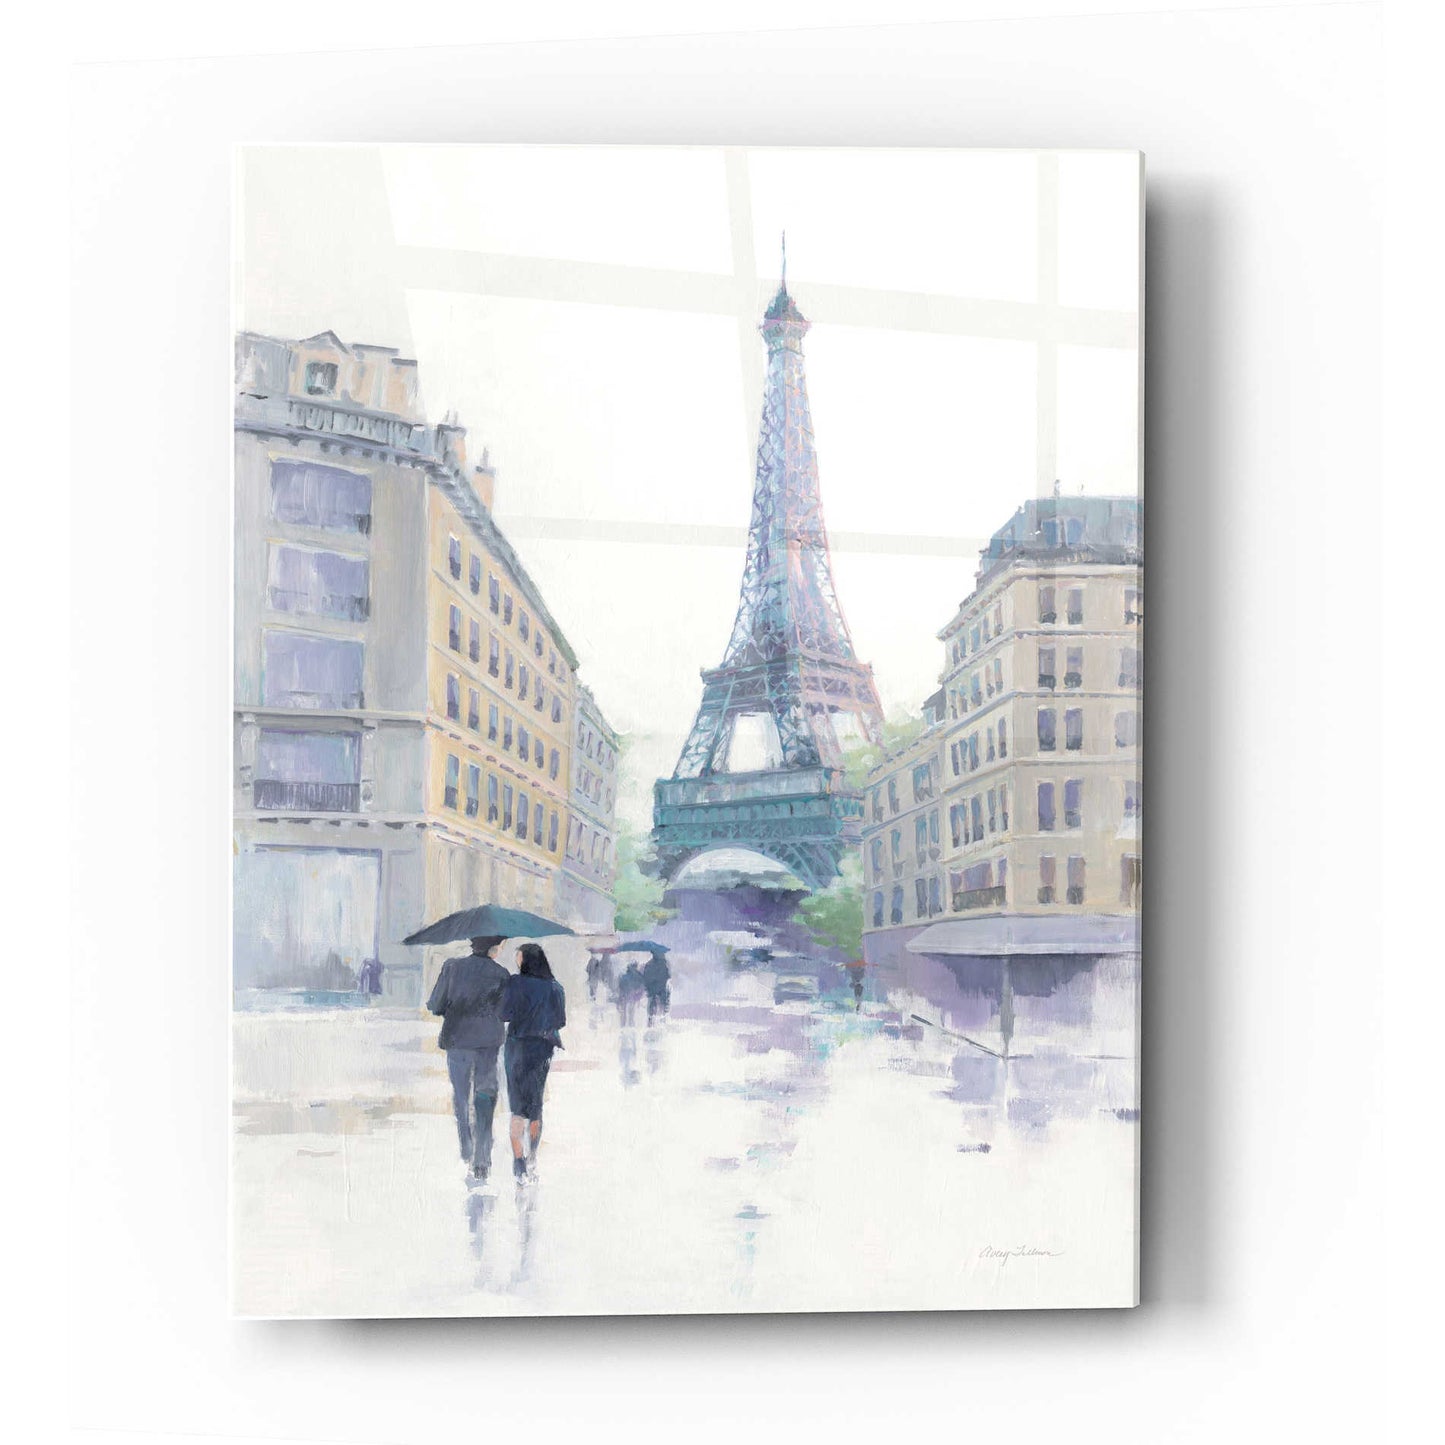 Epic Art 'Walking in the Rain' by Avery Tillmon, Acrylic Glass Wall Art,16x24